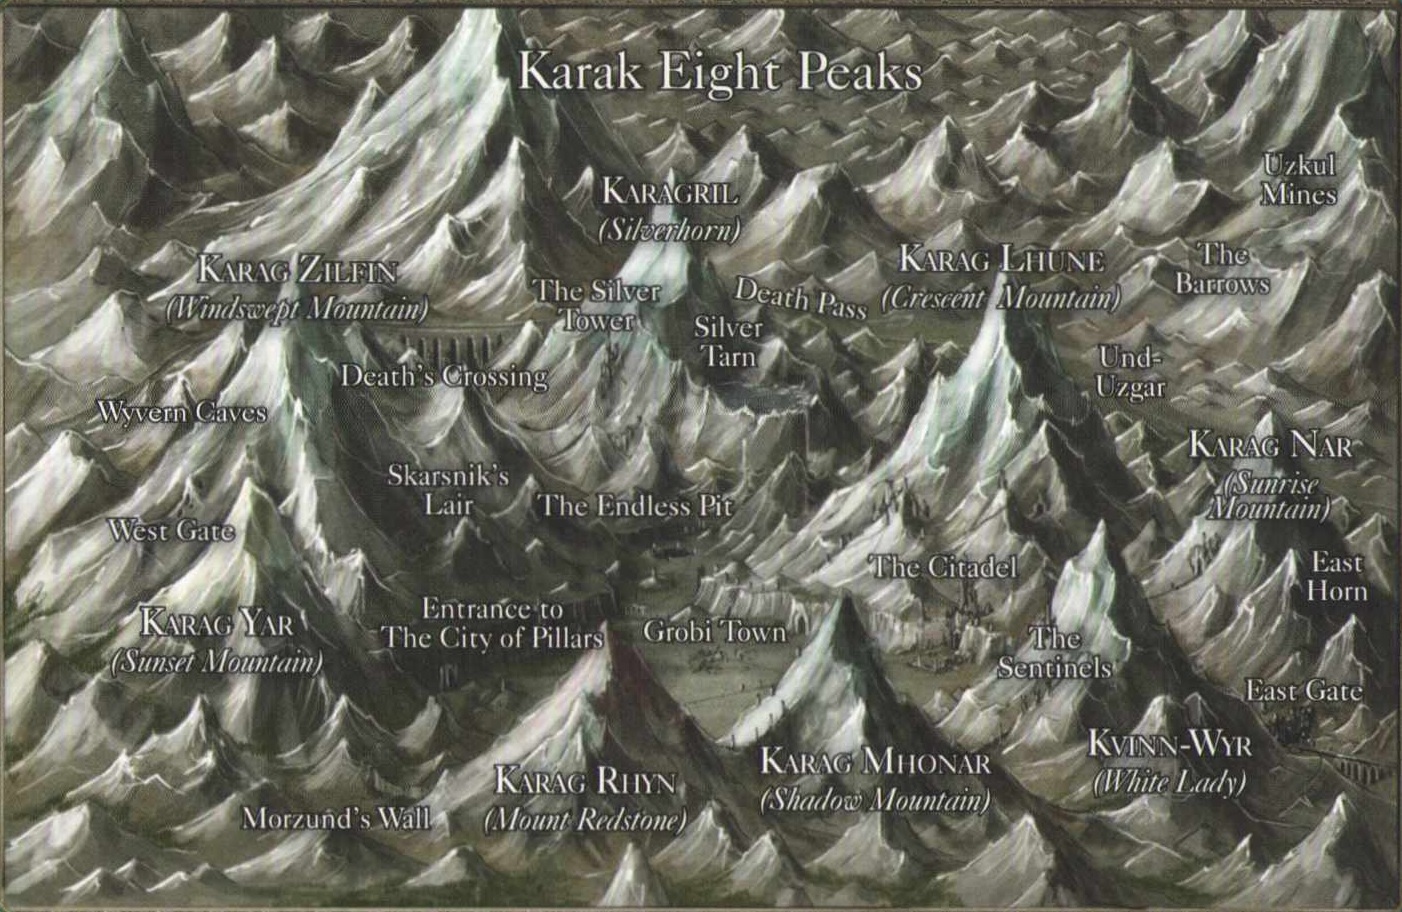 where is karak eight peaks